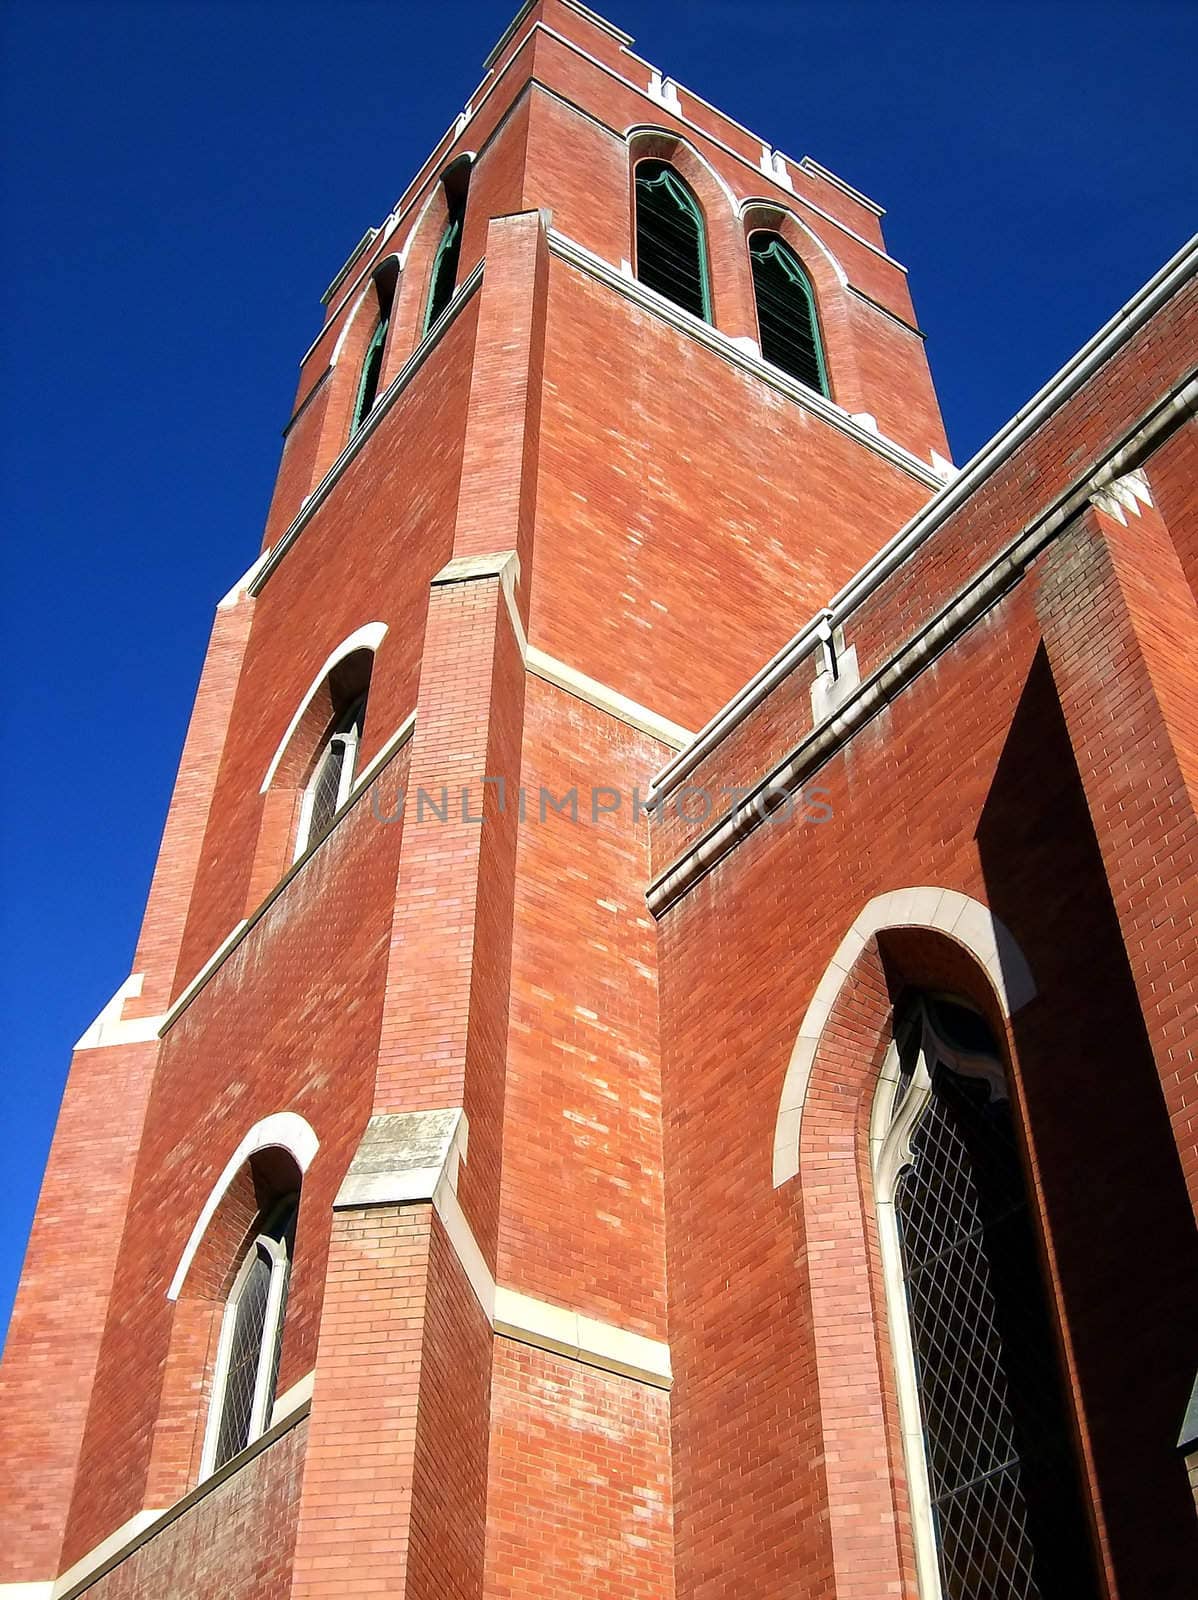 Church Tower by watamyr